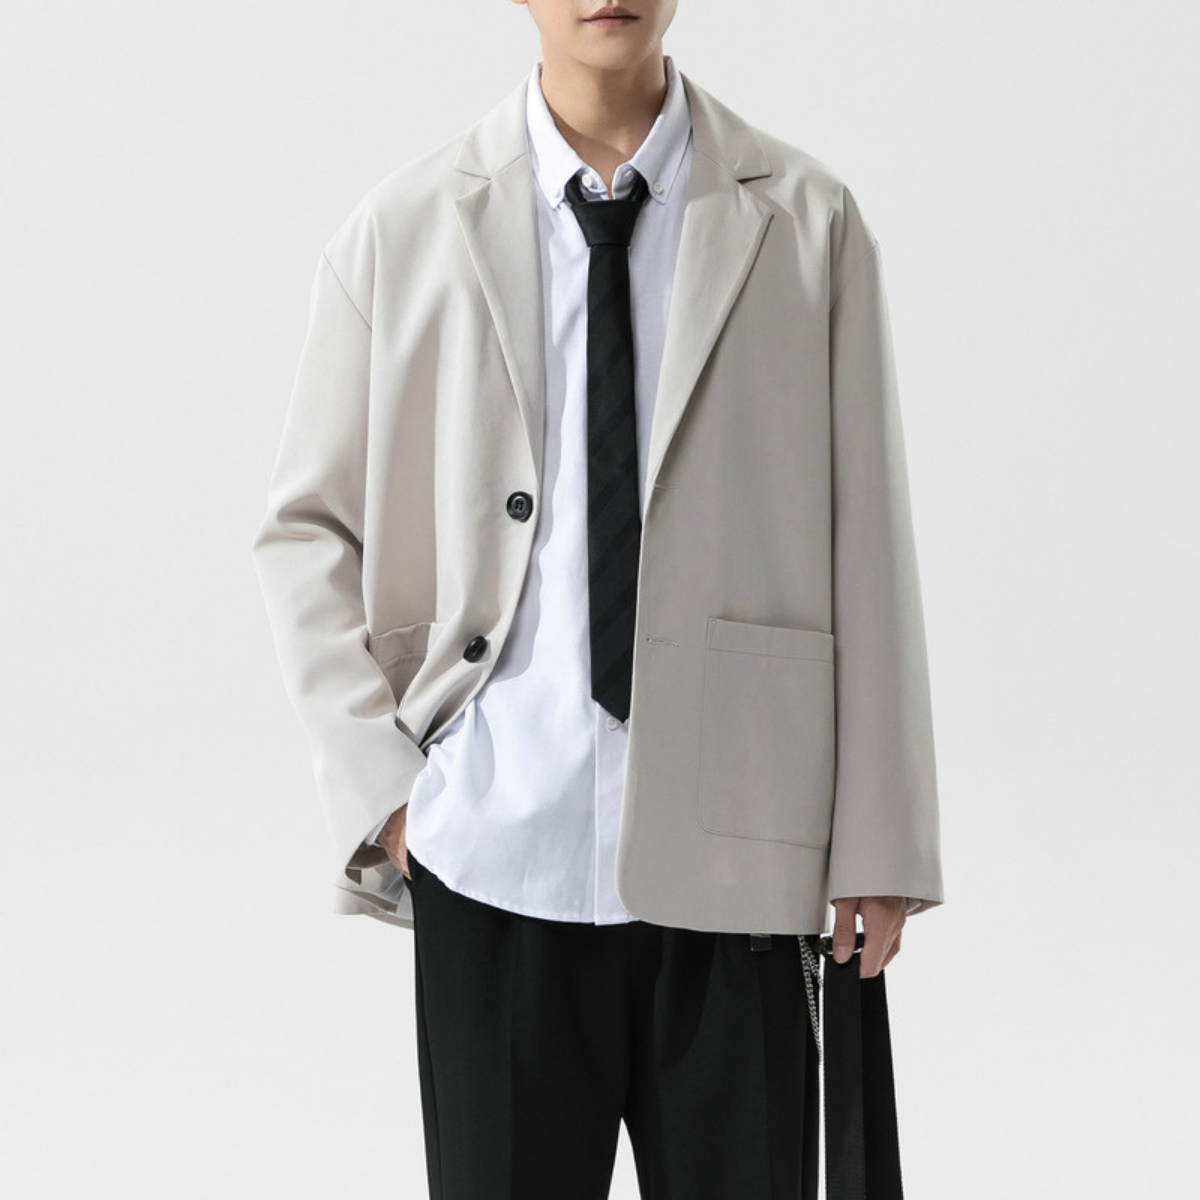 Áo blazer nam phong cách Unisex Hàn Quốc, mặc khoác công sở, đi học hay dạo phố đều phù hợp - Simple Man Fashion